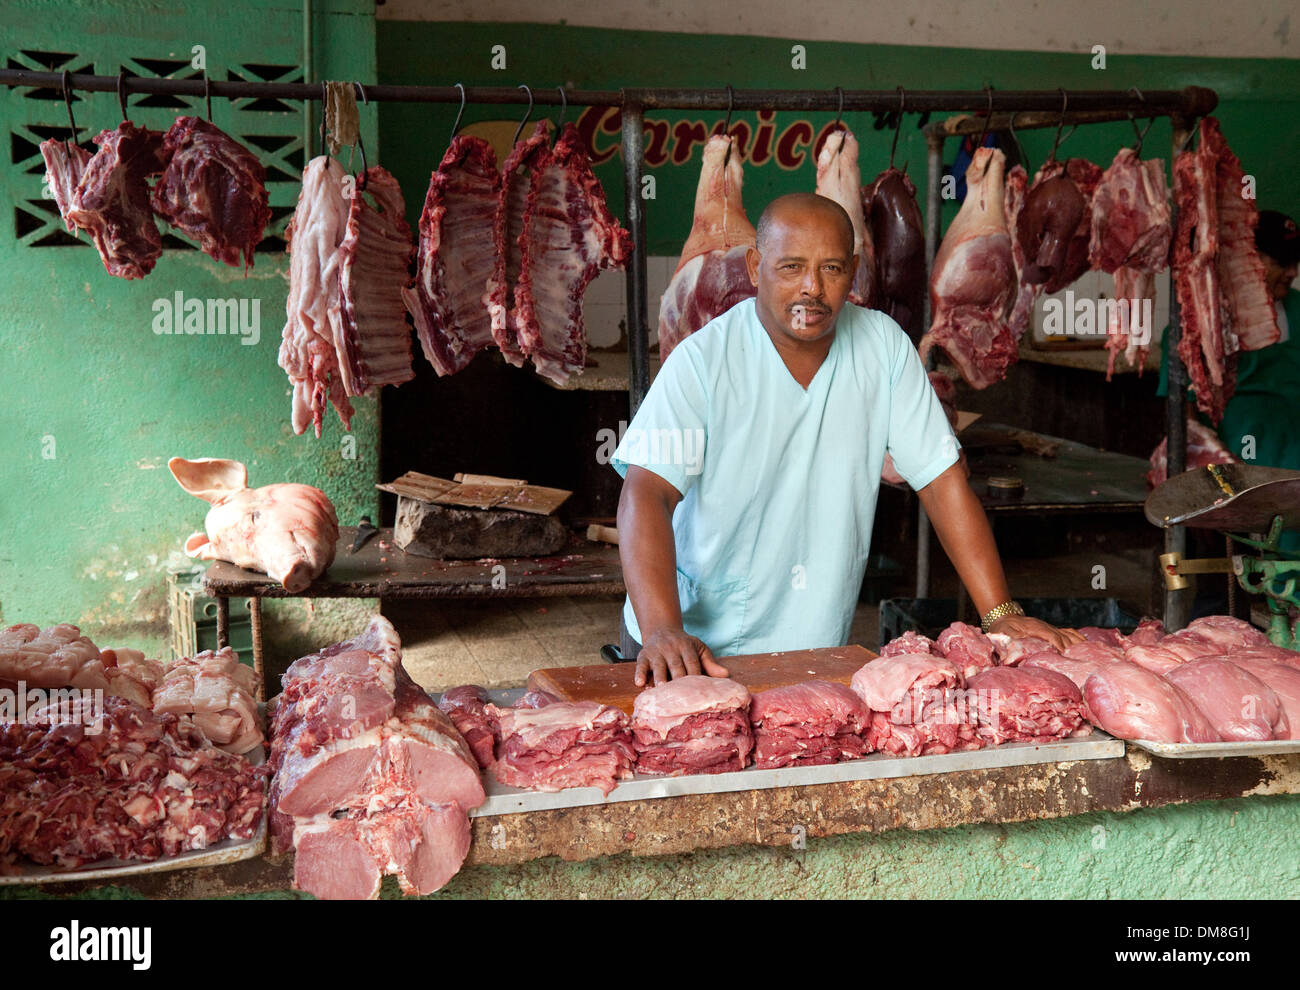 Un boucher avec son échoppe de viande, Cienfuegos, Cuba marché couvert, des Caraïbes, d'Amérique latine Banque D'Images